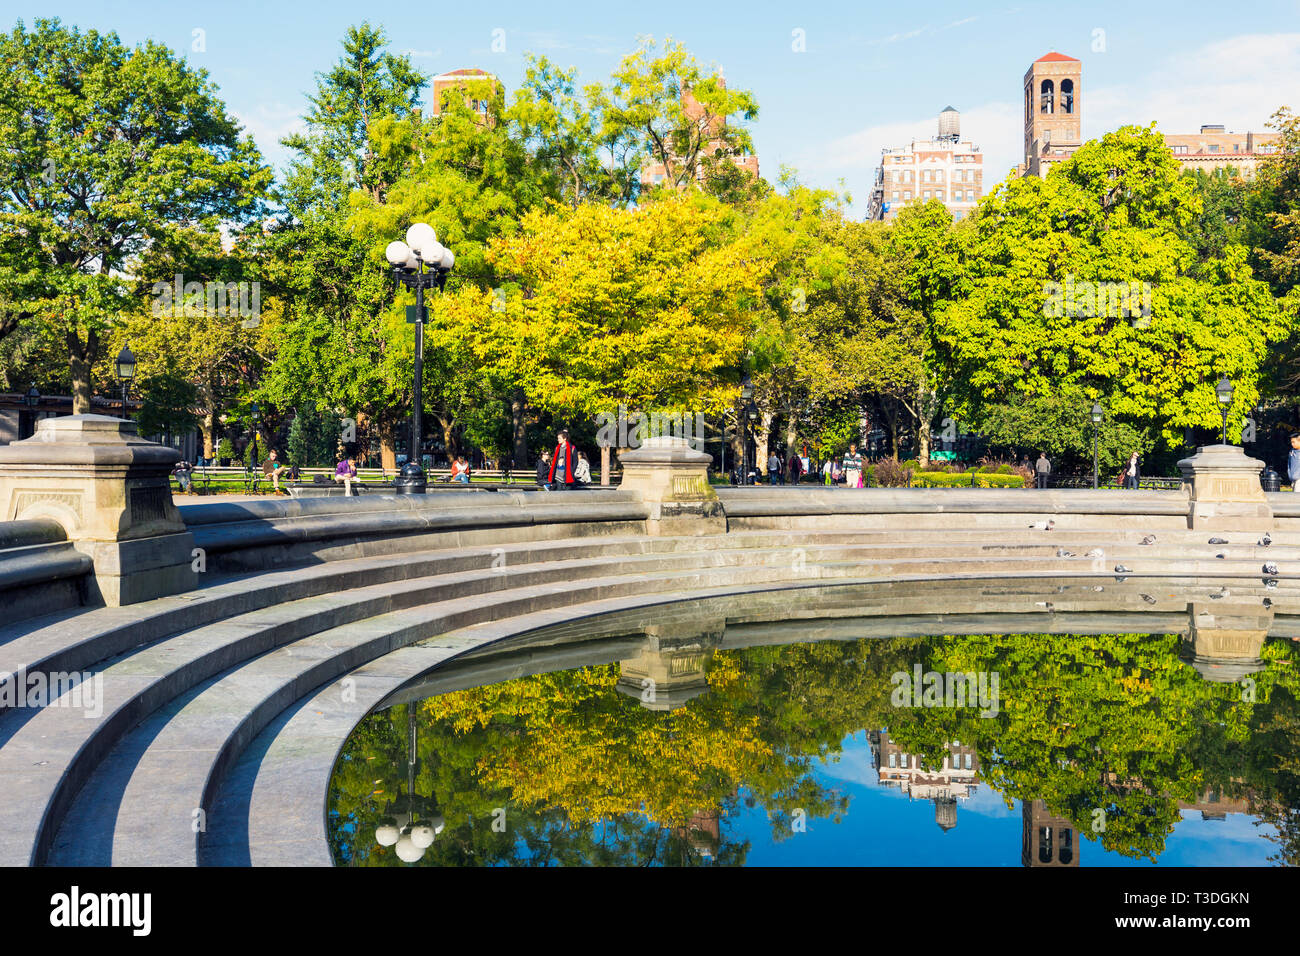 La fontana centrale stagno in Washington Square Park di New York City, nello Stato di New York, Stati Uniti d'America. Foto Stock